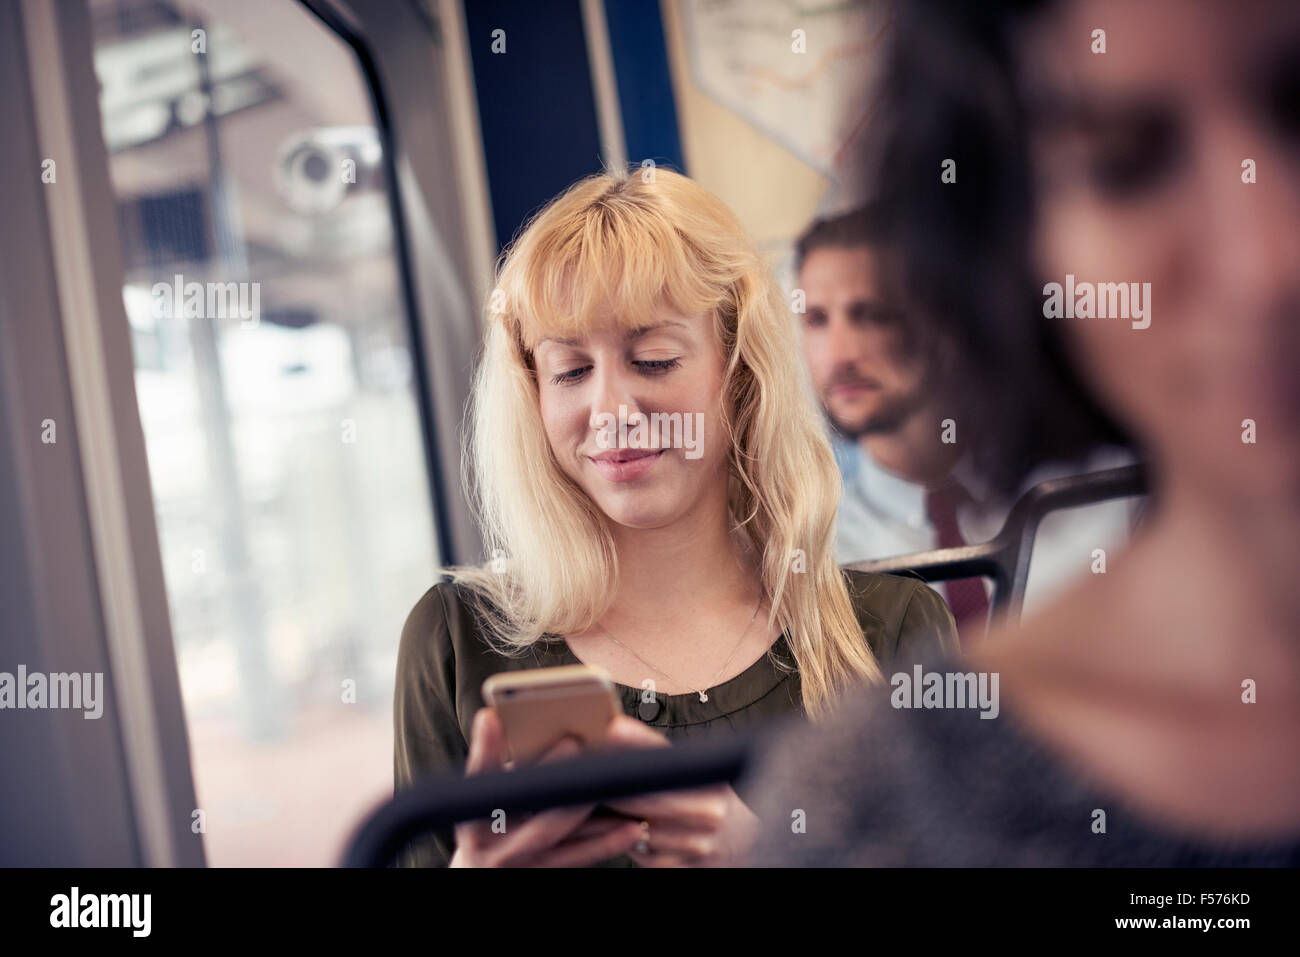 Une femme blonde sur un bus en regardant son téléphone portable Banque D'Images